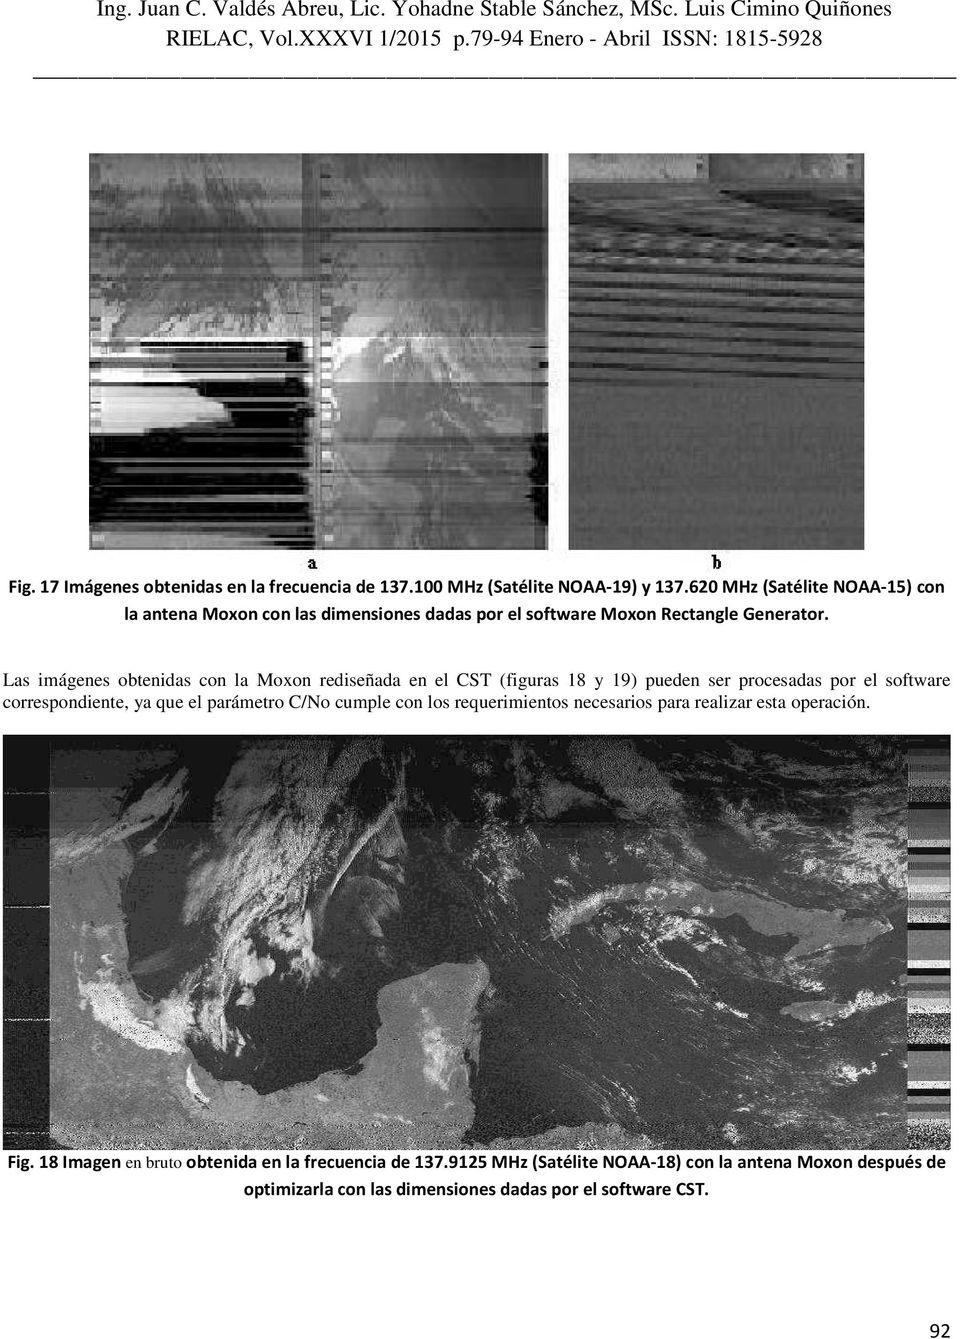 Las imágenes obtenidas con la Moxon rediseñada en el CST (figuras 18 y 19) pueden ser procesadas por el software correspondiente, ya que el parámetro